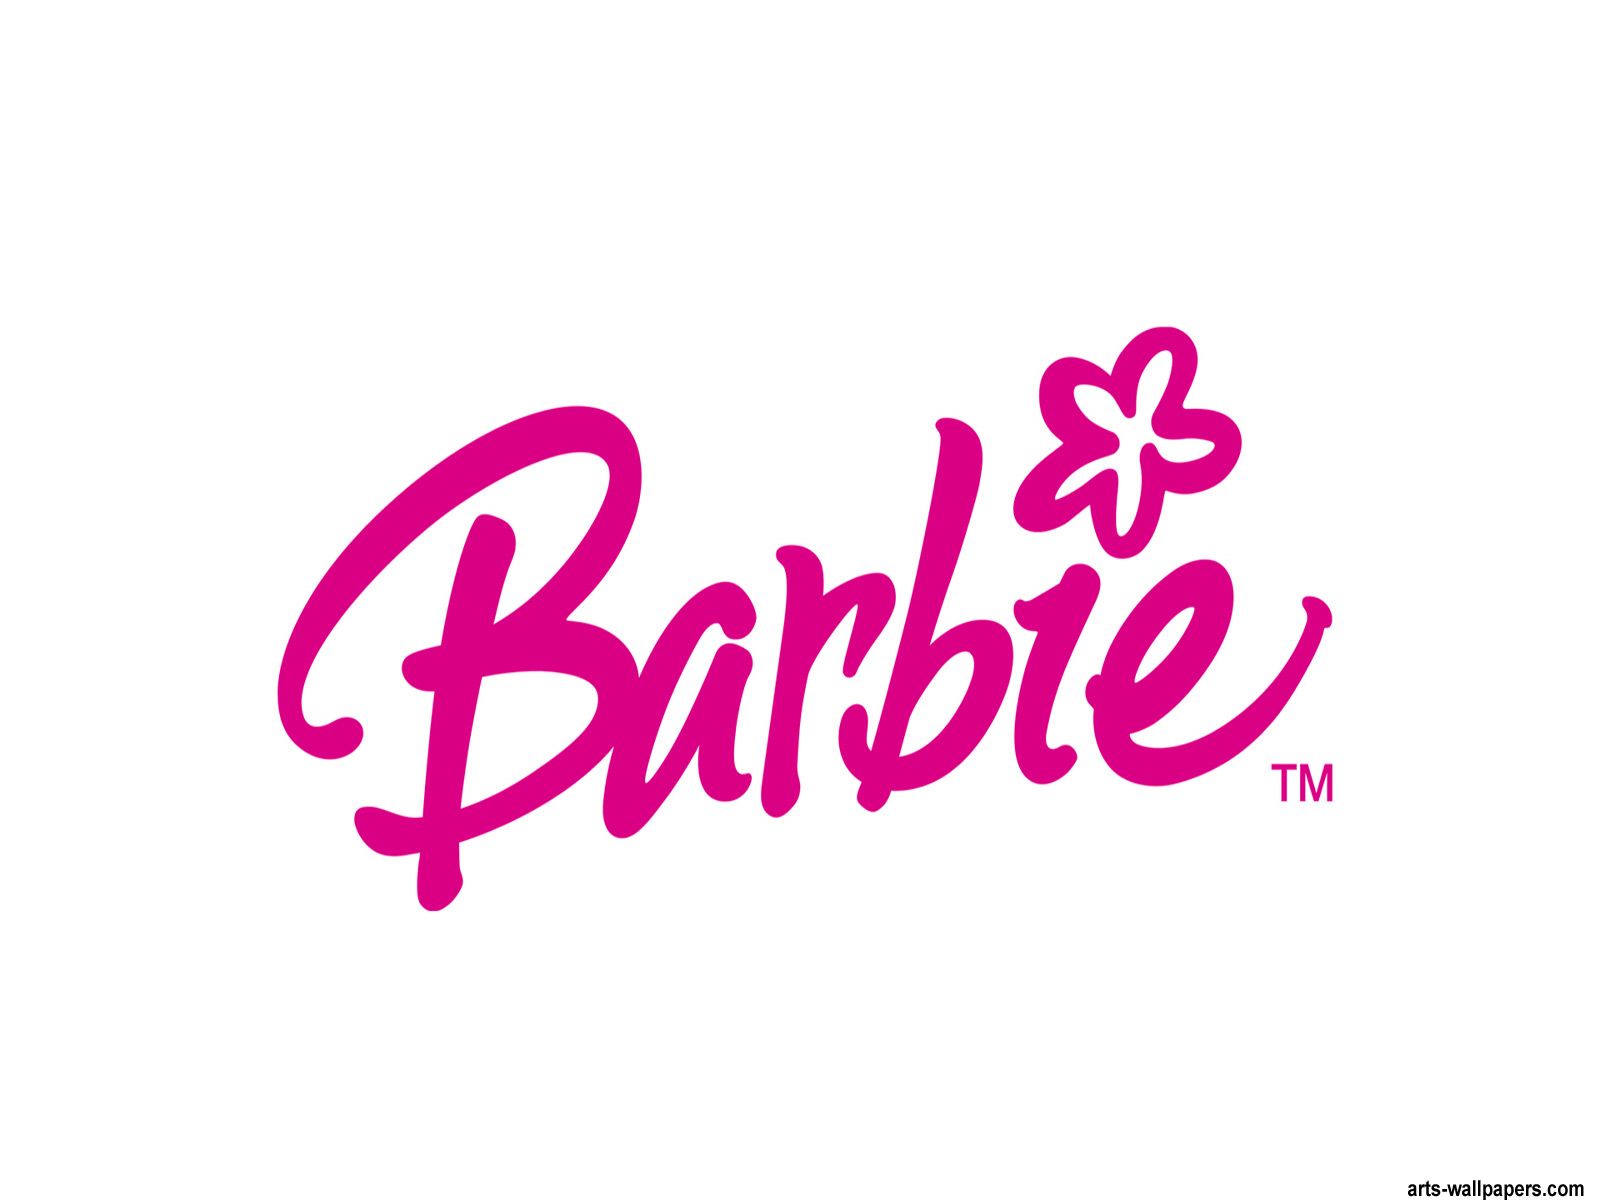 Barbie emblem